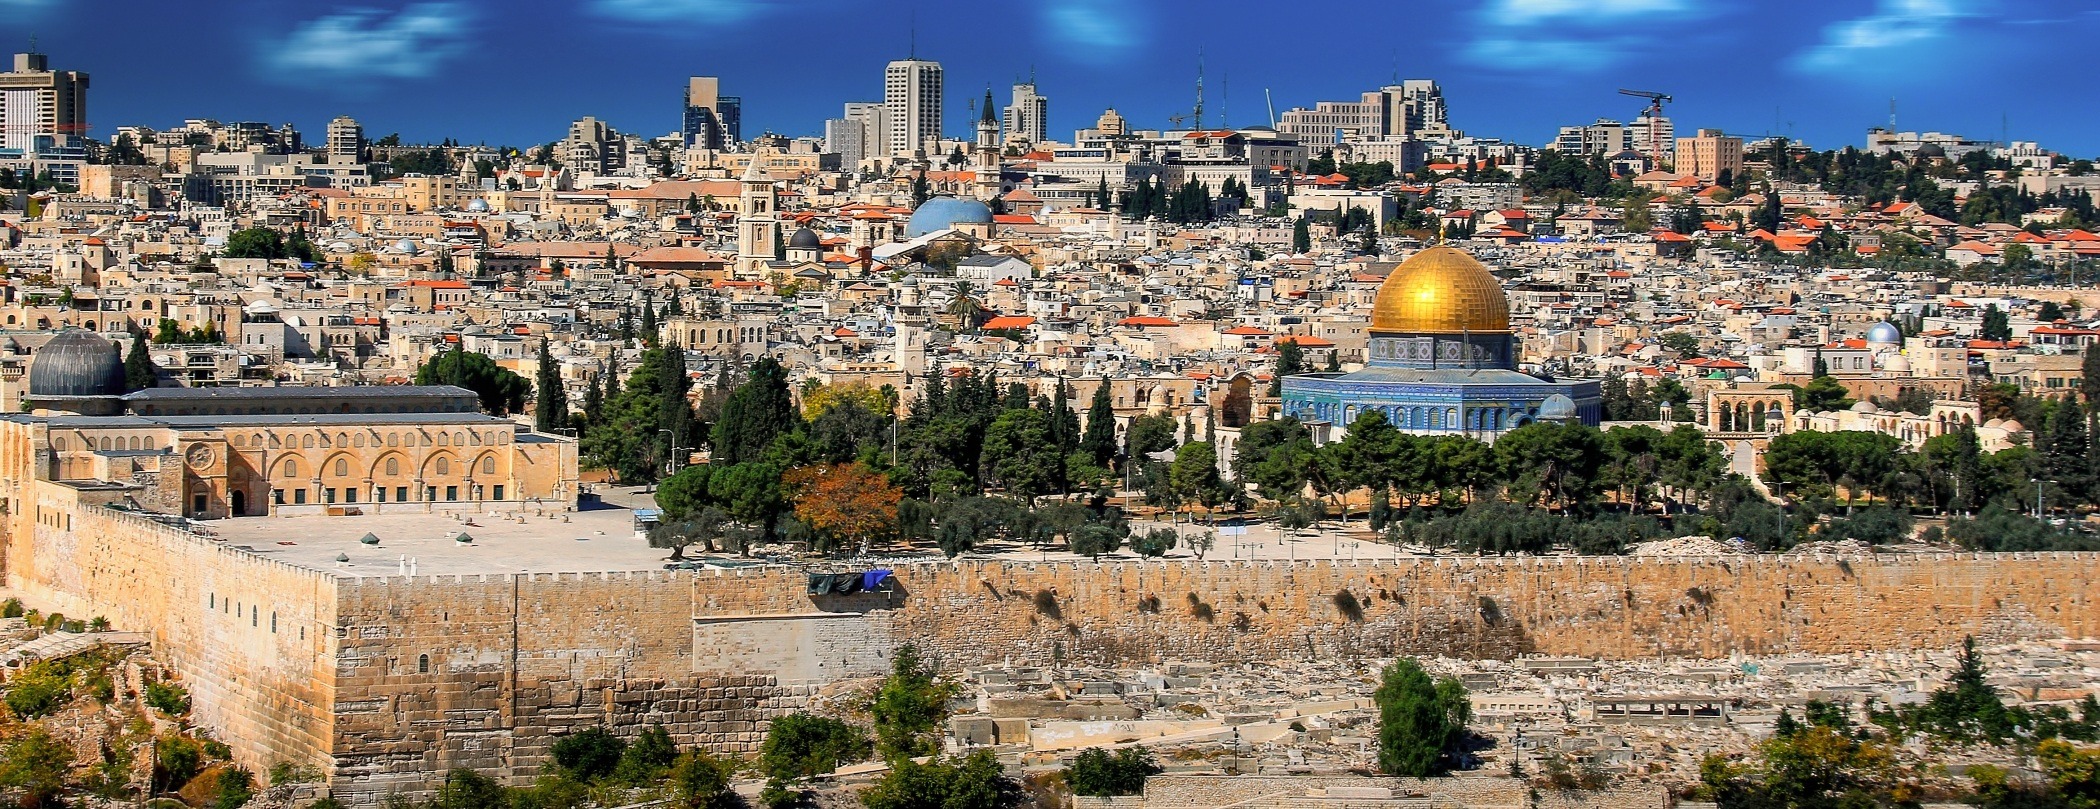 The Holy City Jerusalem